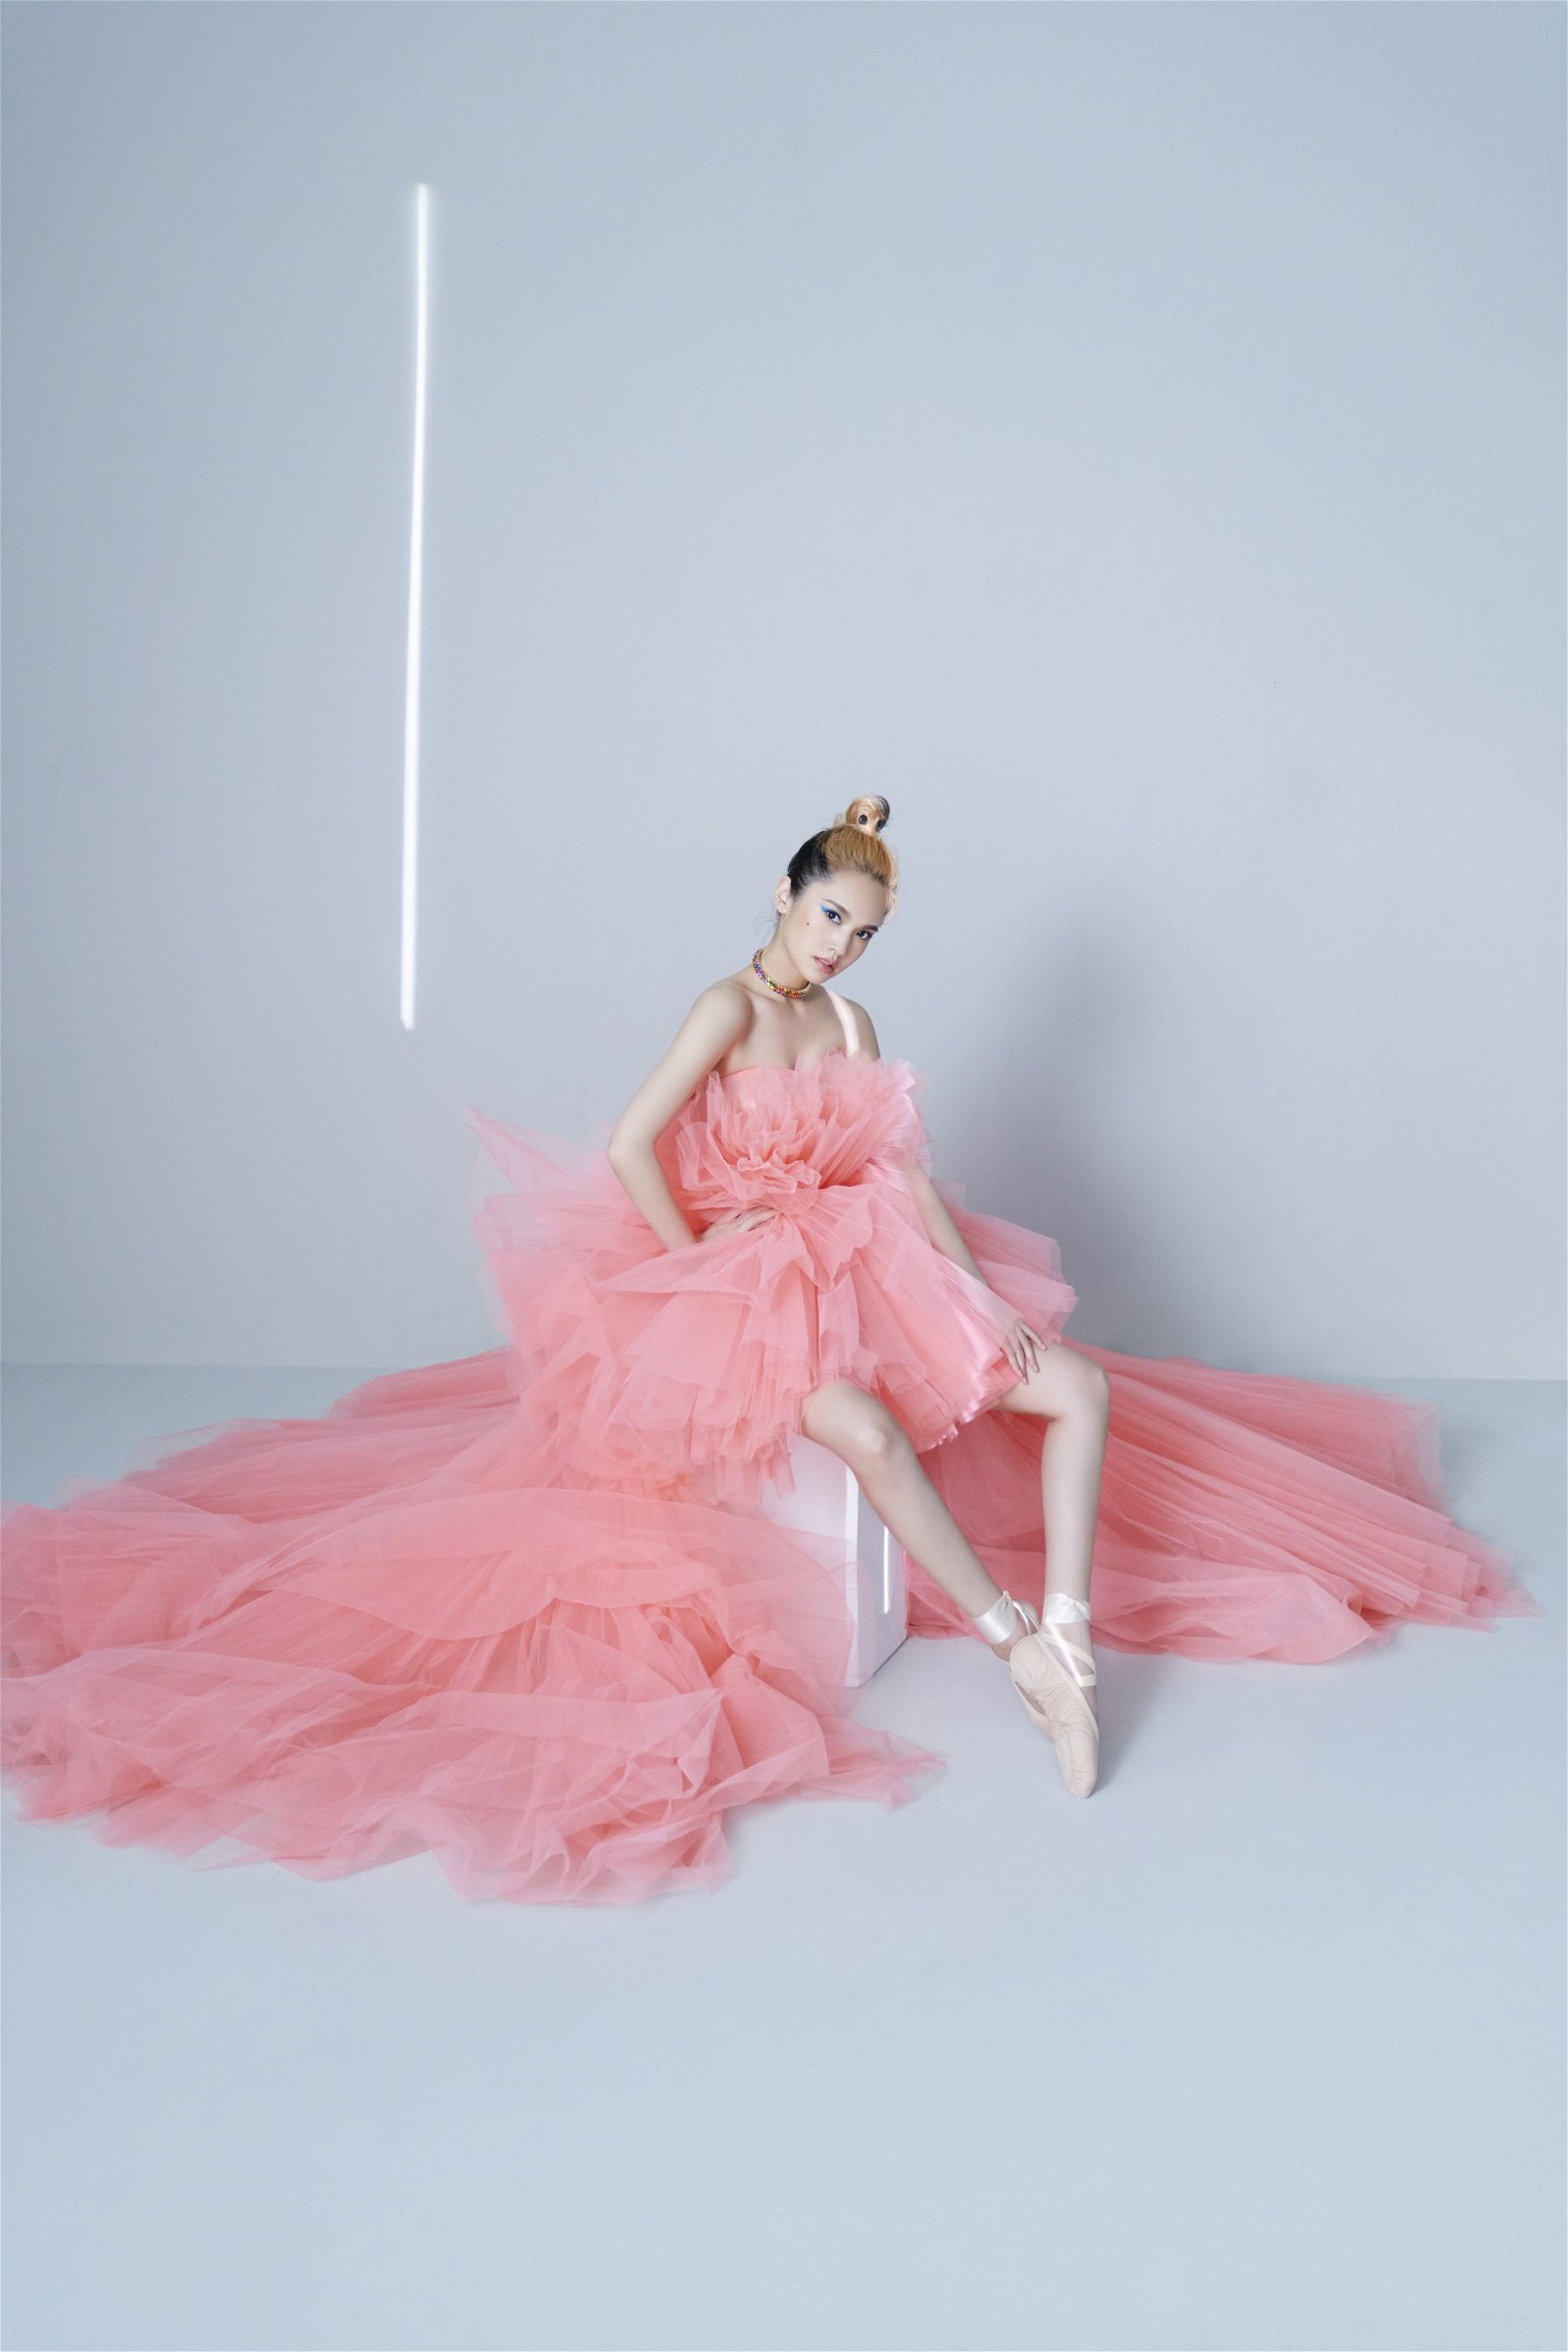 穿上桃色礼服的杨丞琳展现的是Movie Star的一面。